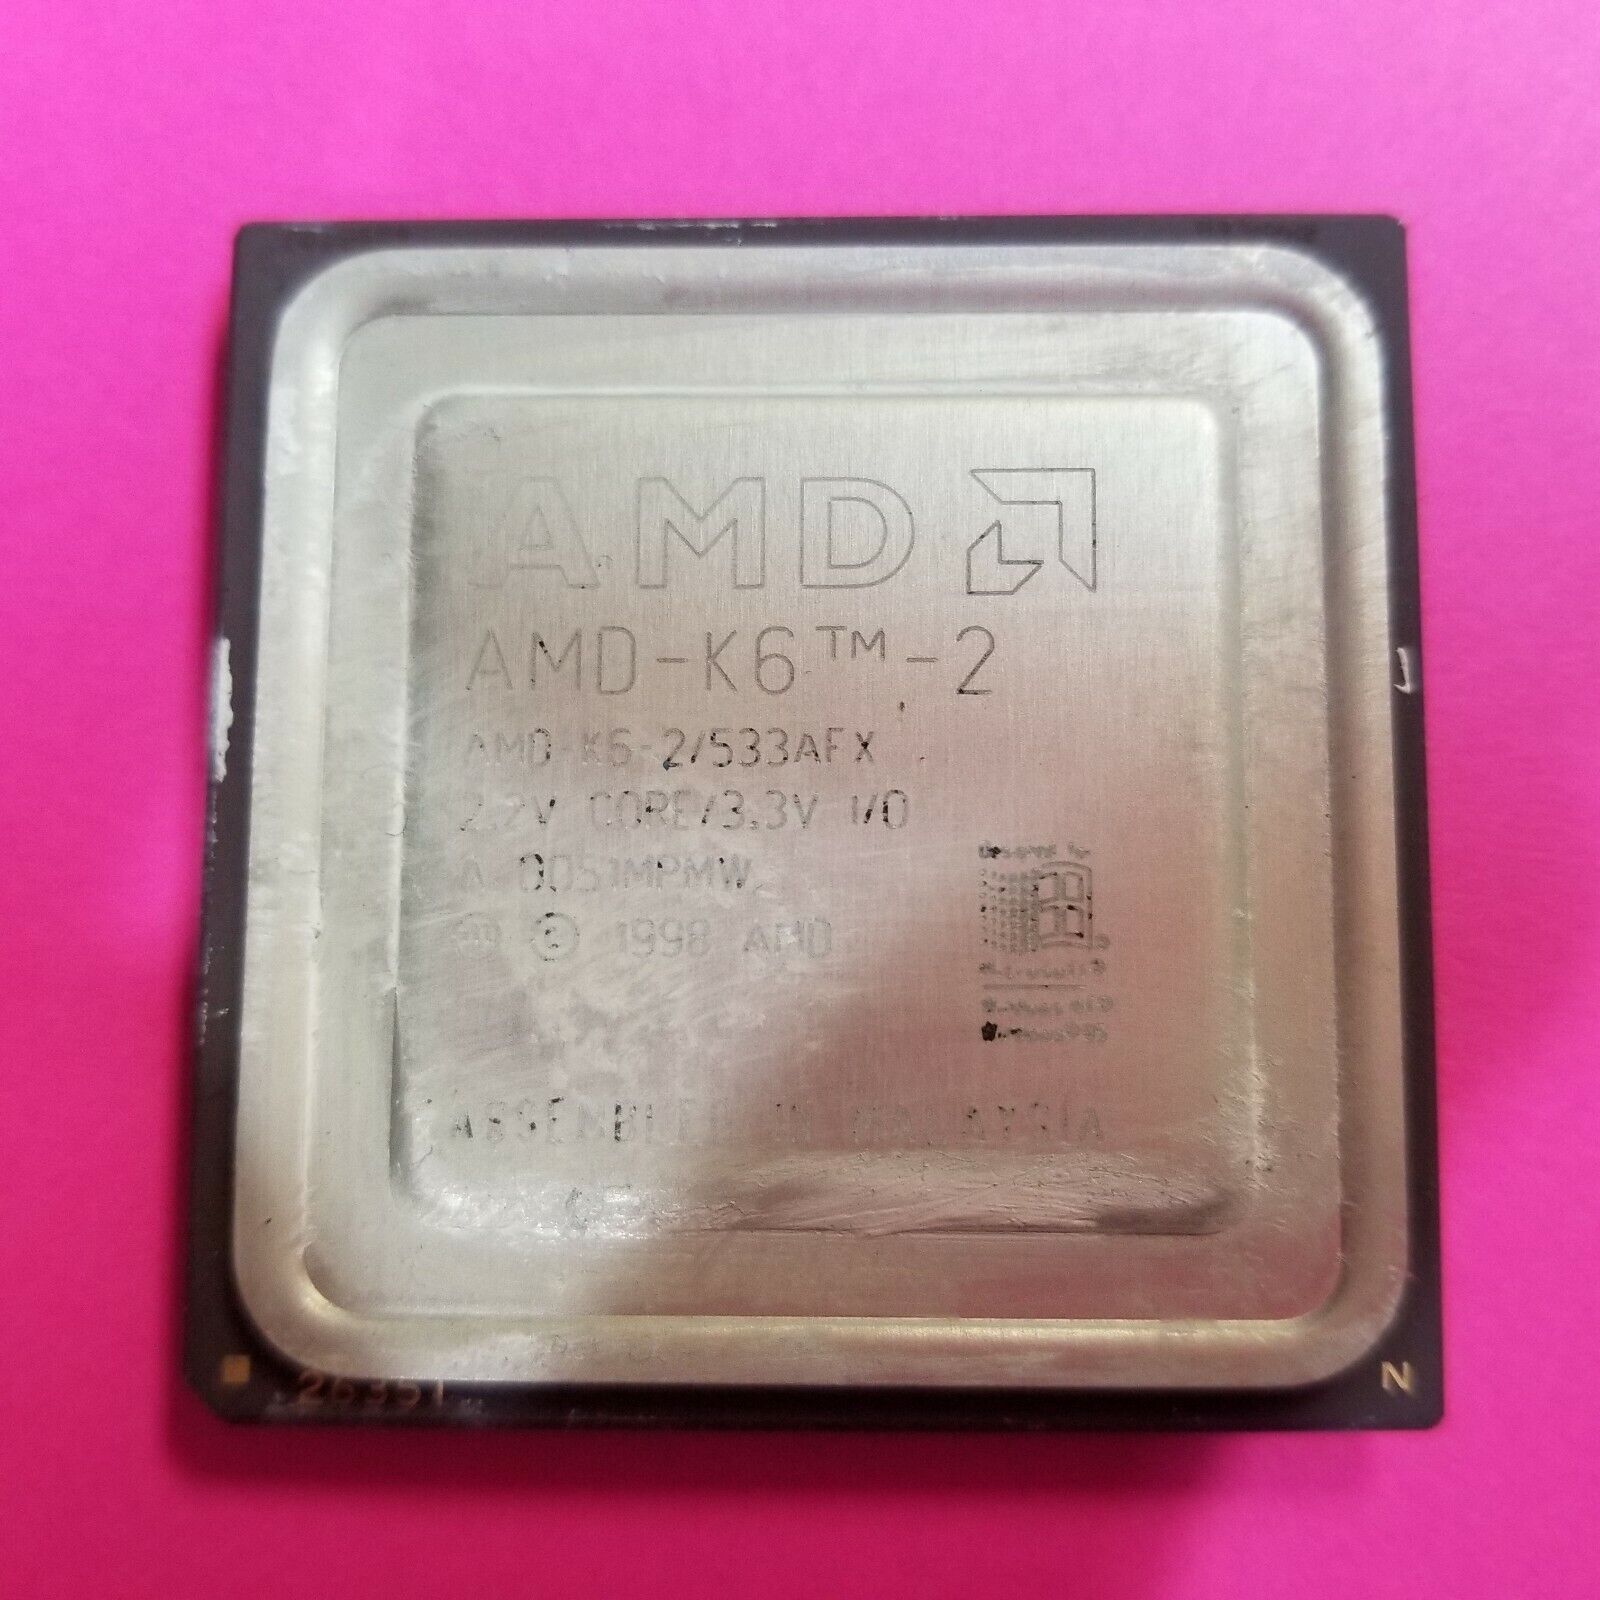 AMD K6-2 533Mhz Socket 7 Processor - AMD-K6-2/533AFX - 2.2V Core / 3.3V